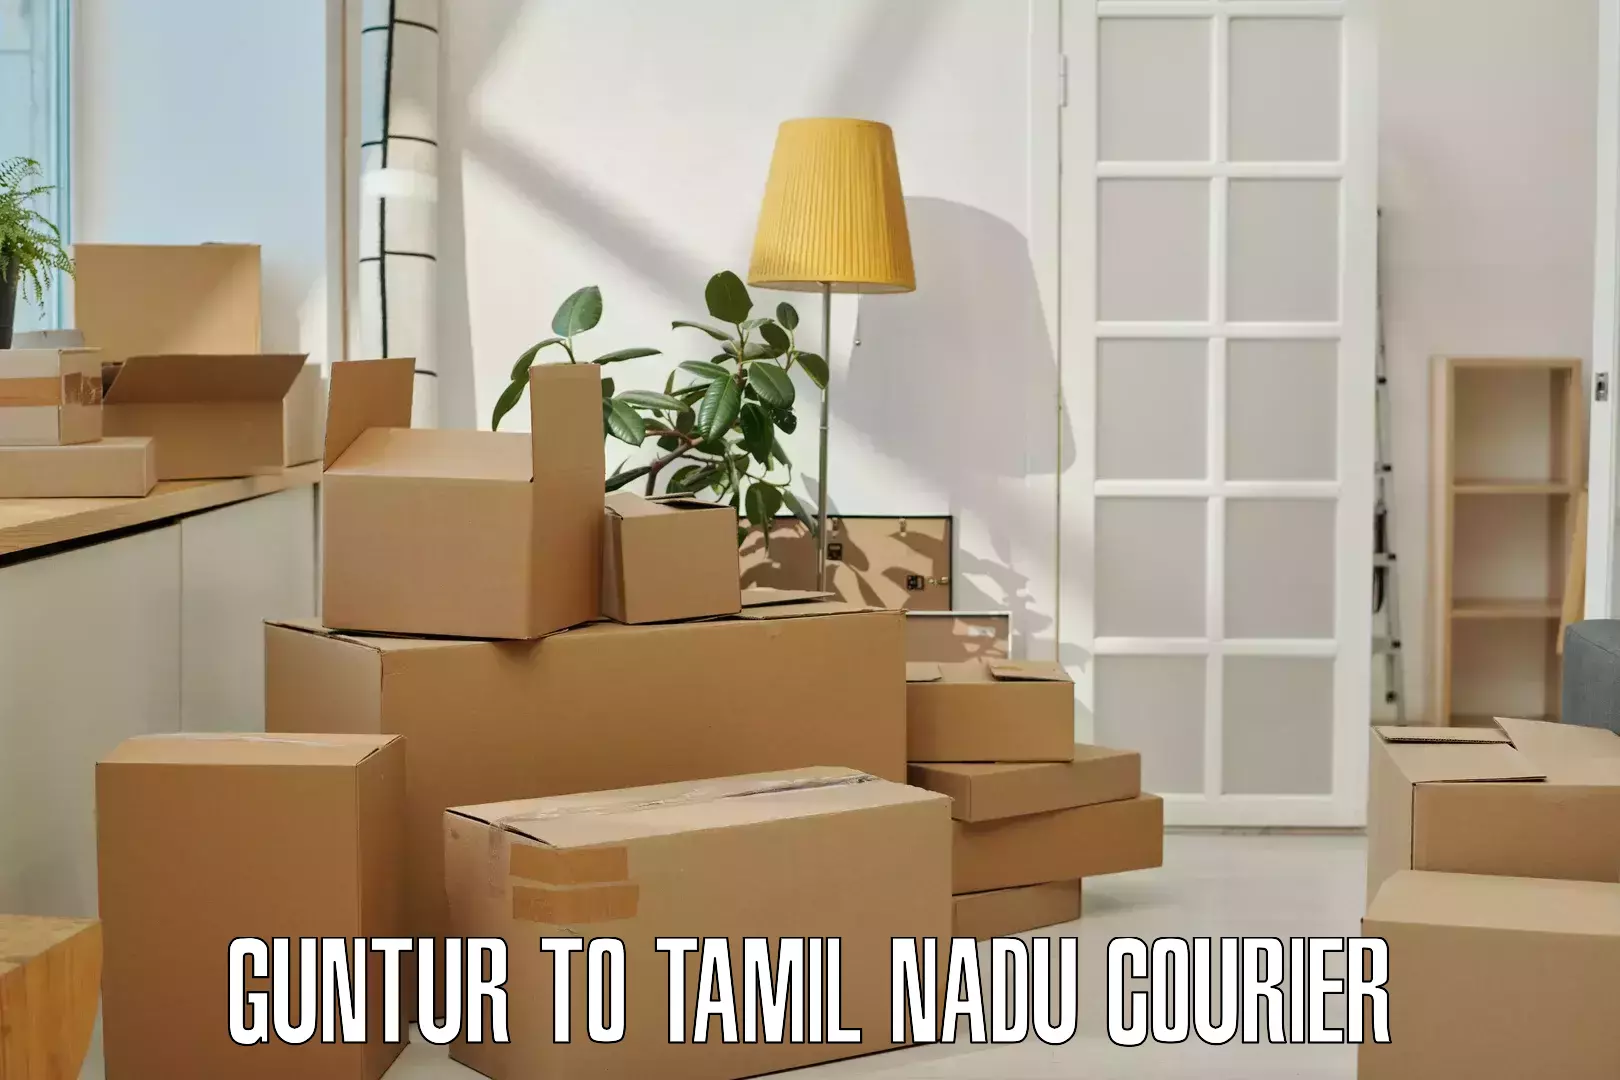 Quick courier services Guntur to Tamil Nadu